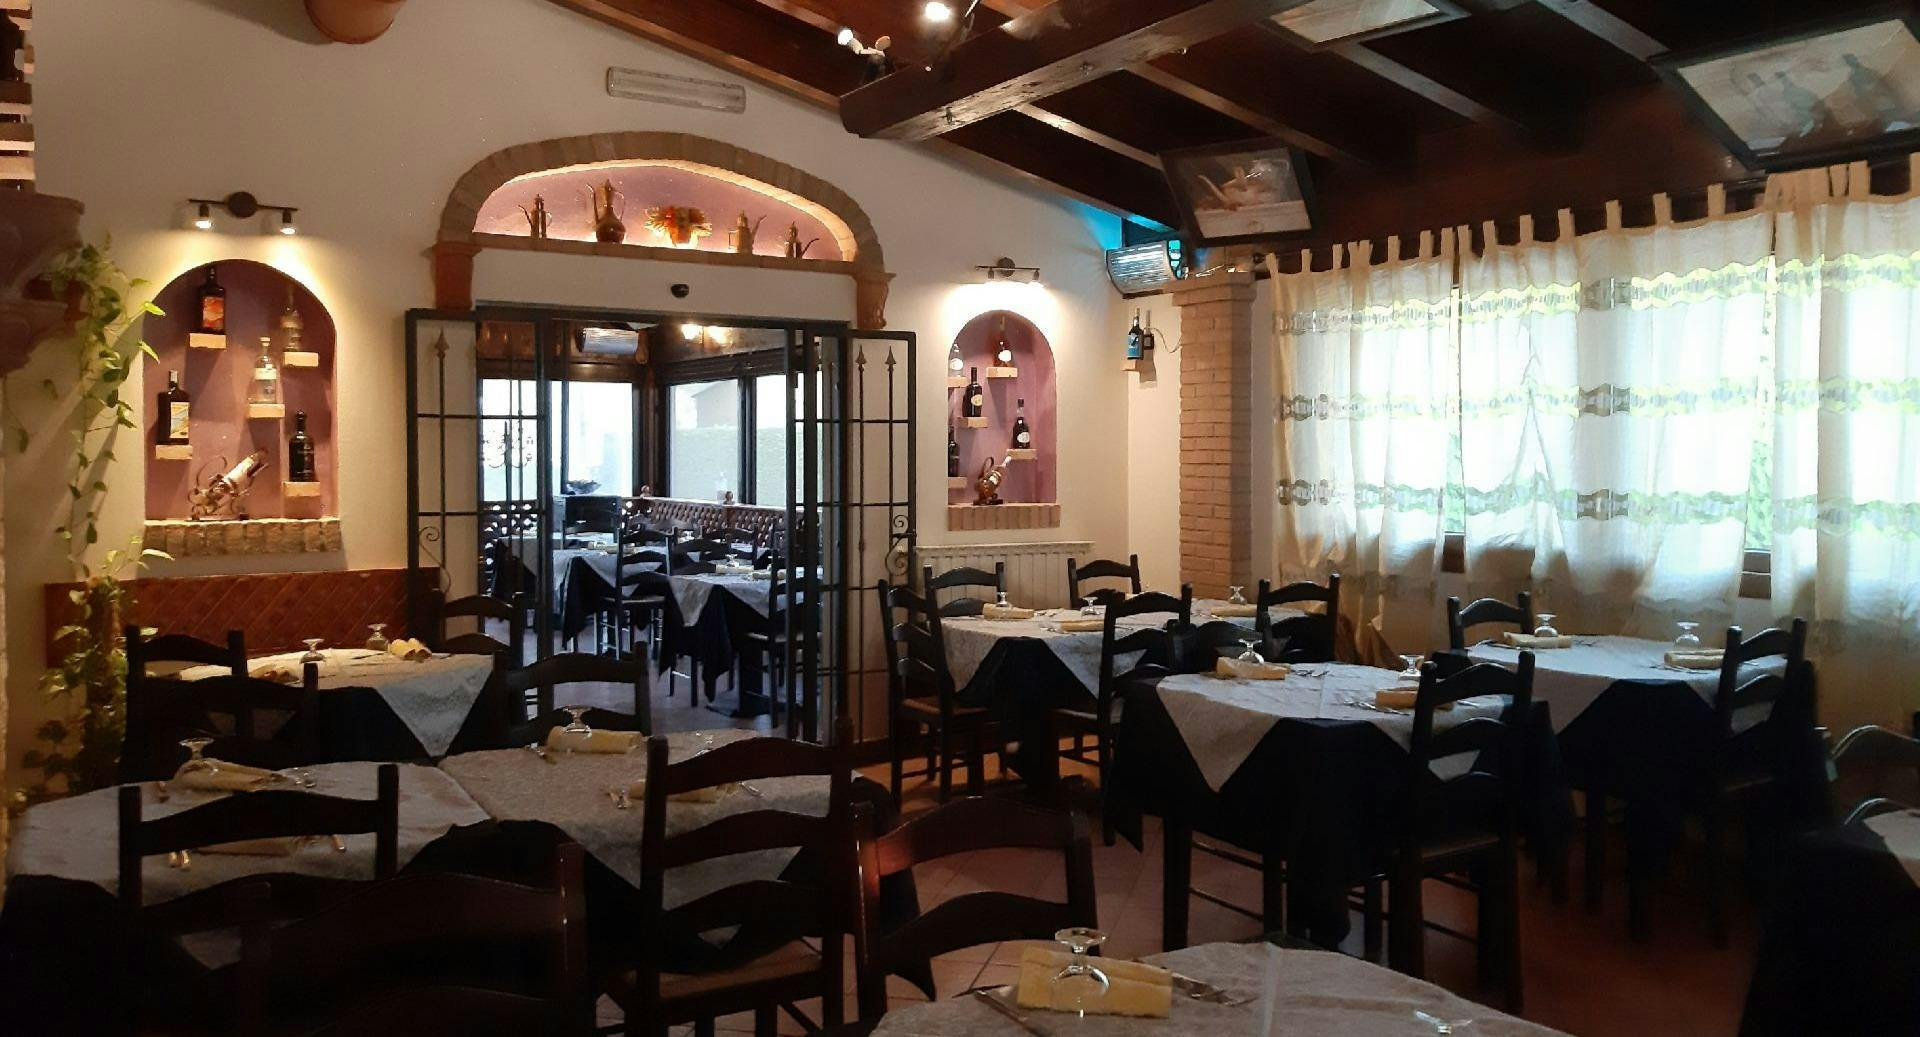 Photo of restaurant Trattoria Da Gio' in Argelato, Bologna